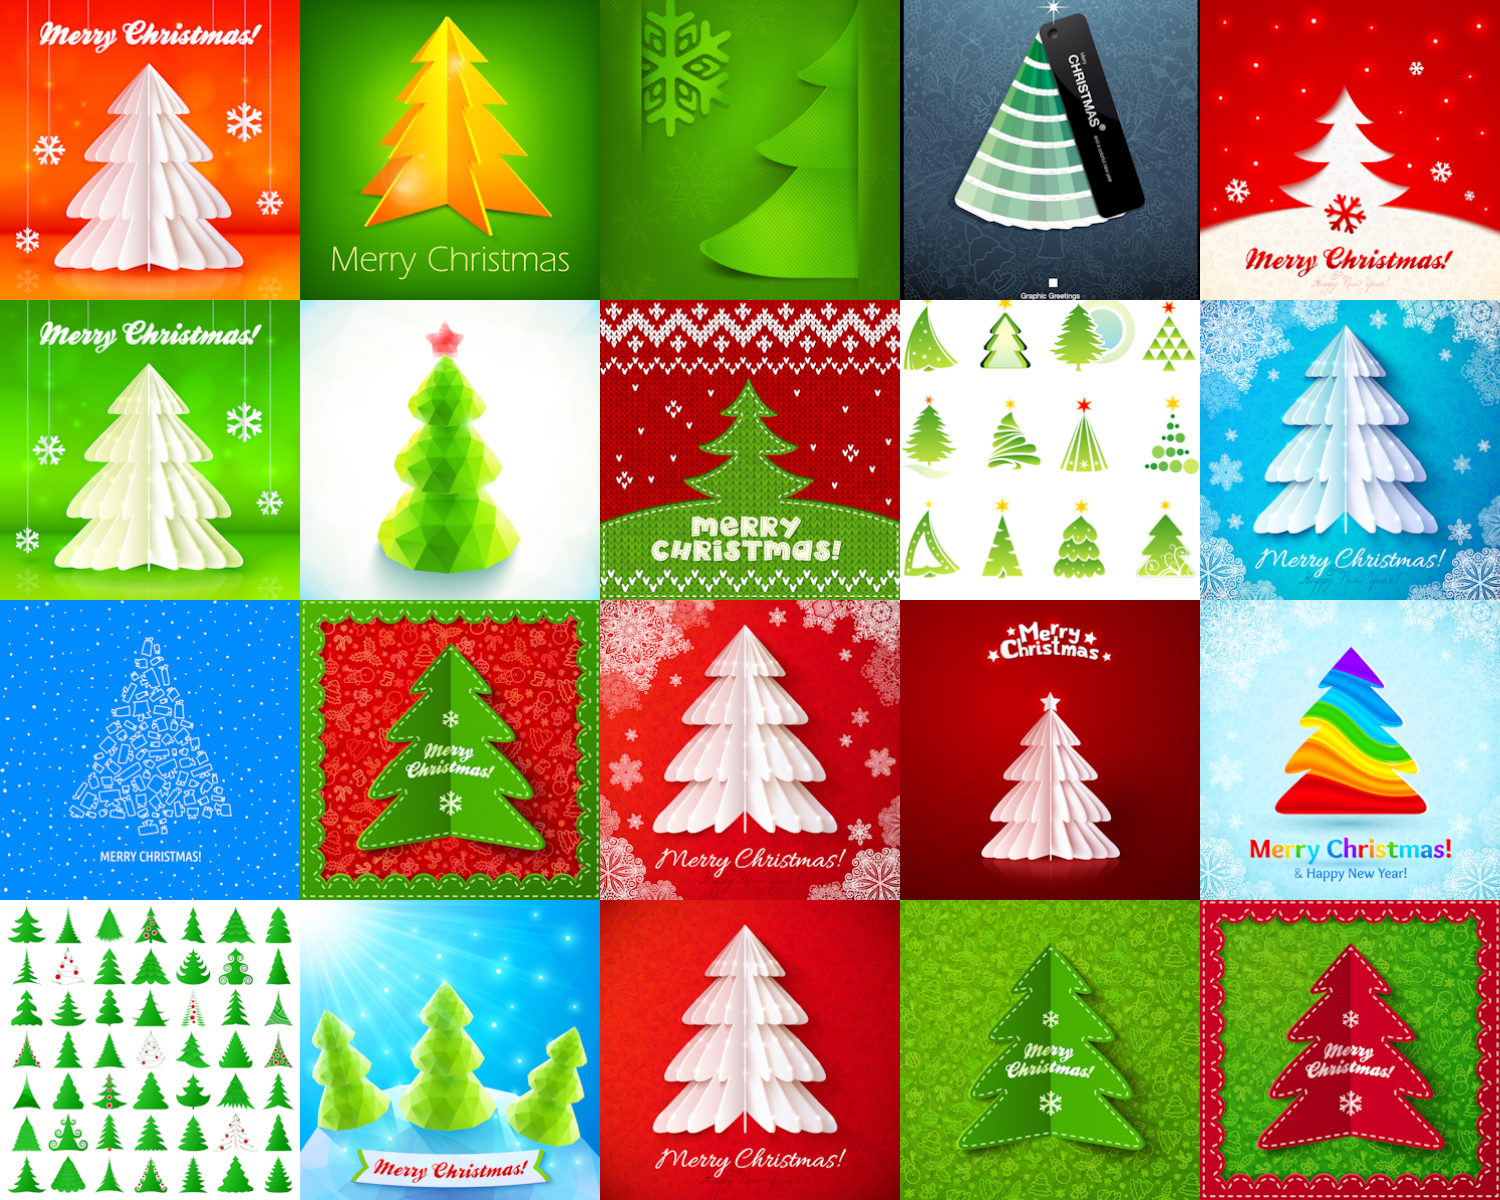 Christmas Fir-tree backgrounds